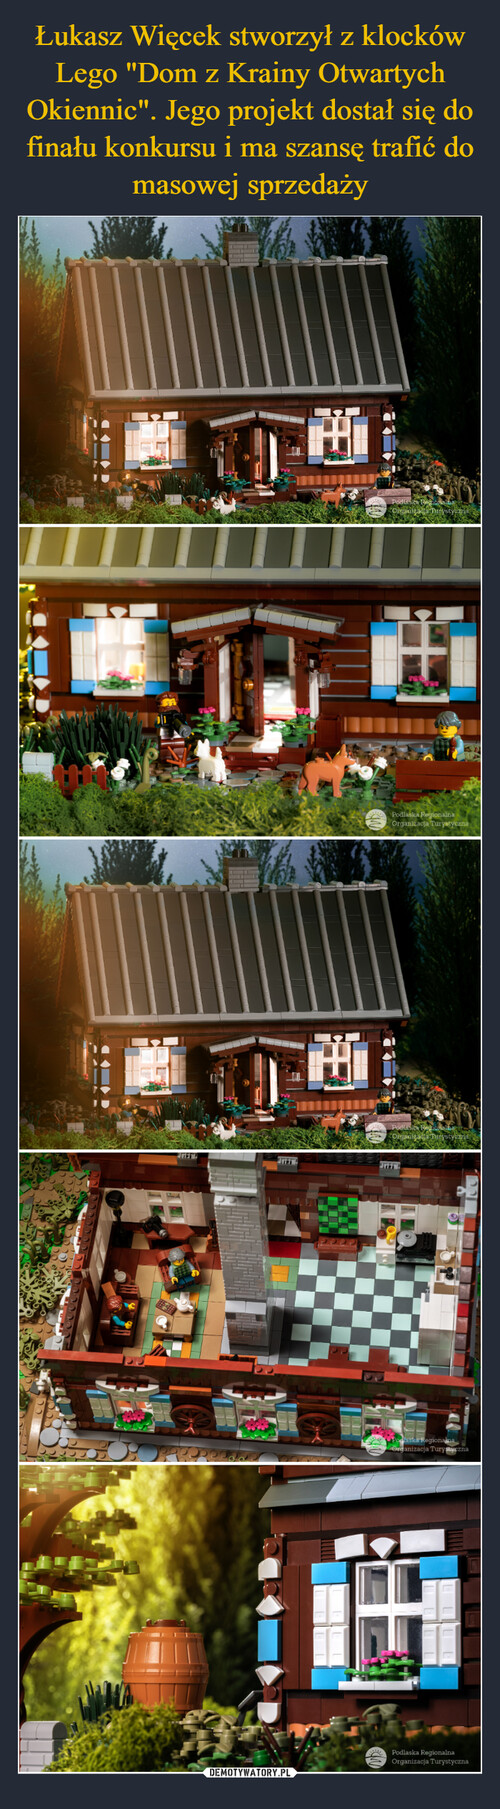 Łukasz Więcek stworzył z klocków Lego "Dom z Krainy Otwartych Okiennic". Jego projekt dostał się do finału konkursu i ma szansę trafić do masowej sprzedaży